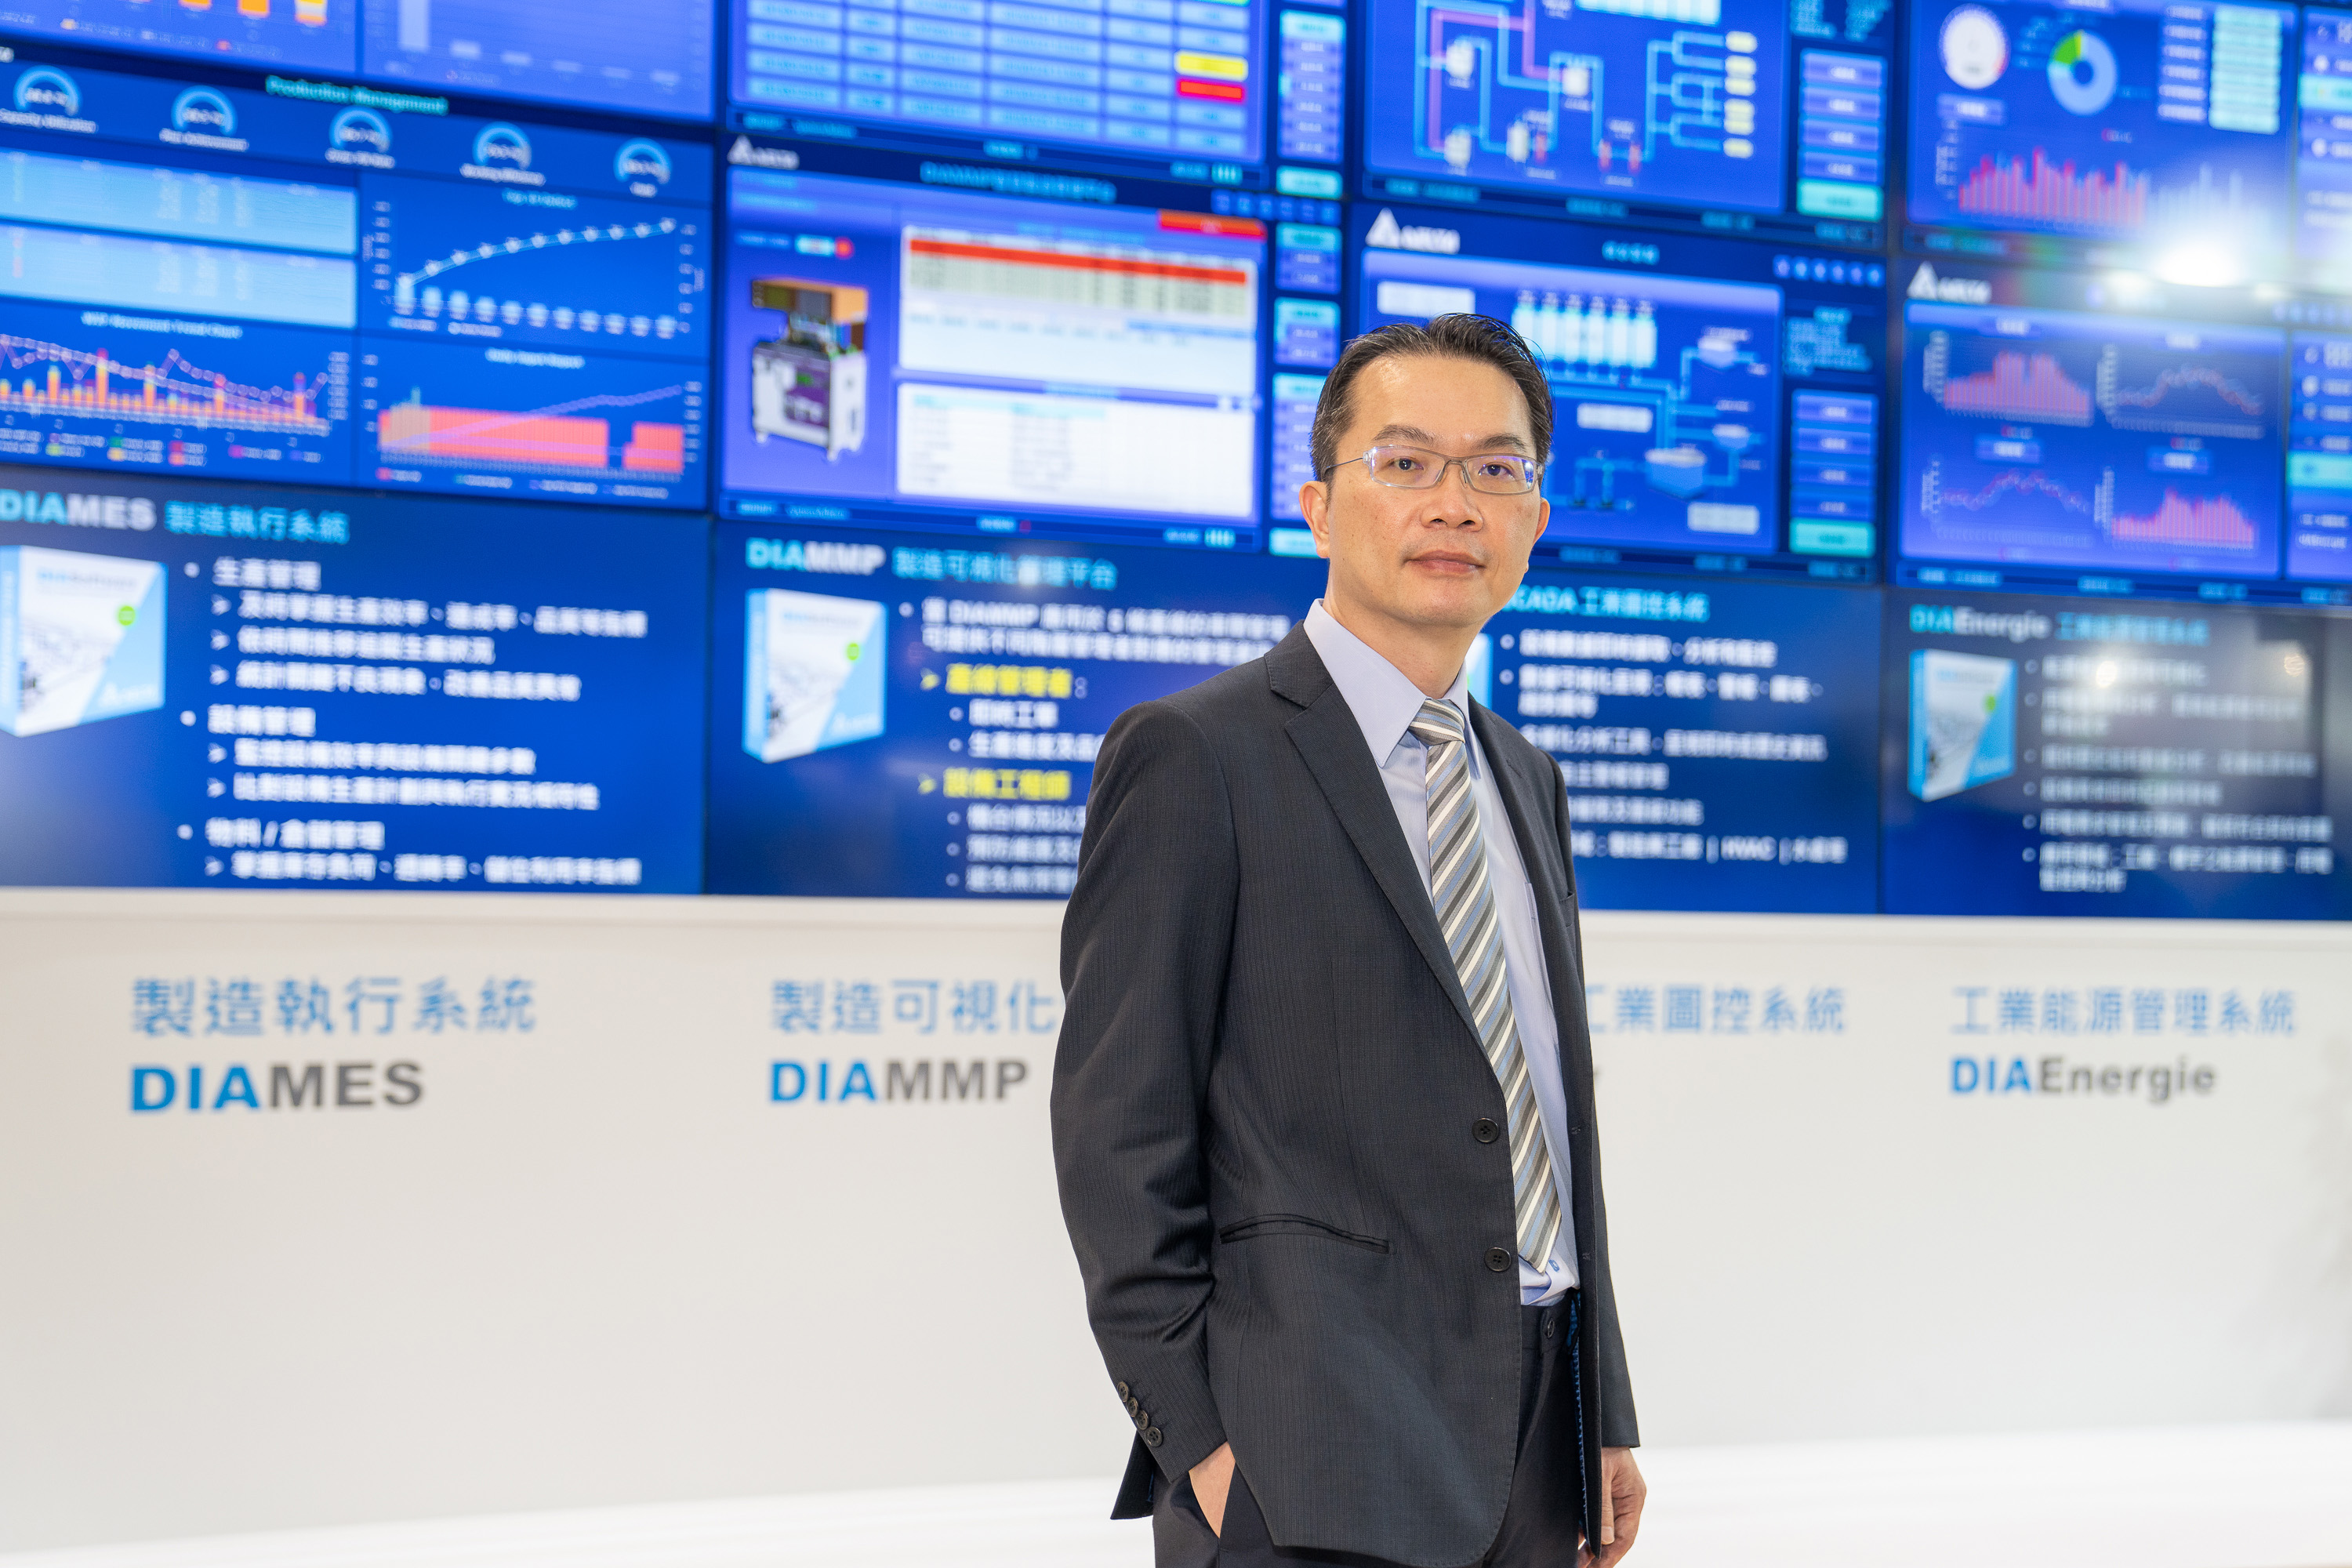 台达机电事业群刘佳容总经理于台北国际自动化工业大展说明台达整合云端物联、智能设备、自动化软硬件所开发的智能制造解决方案